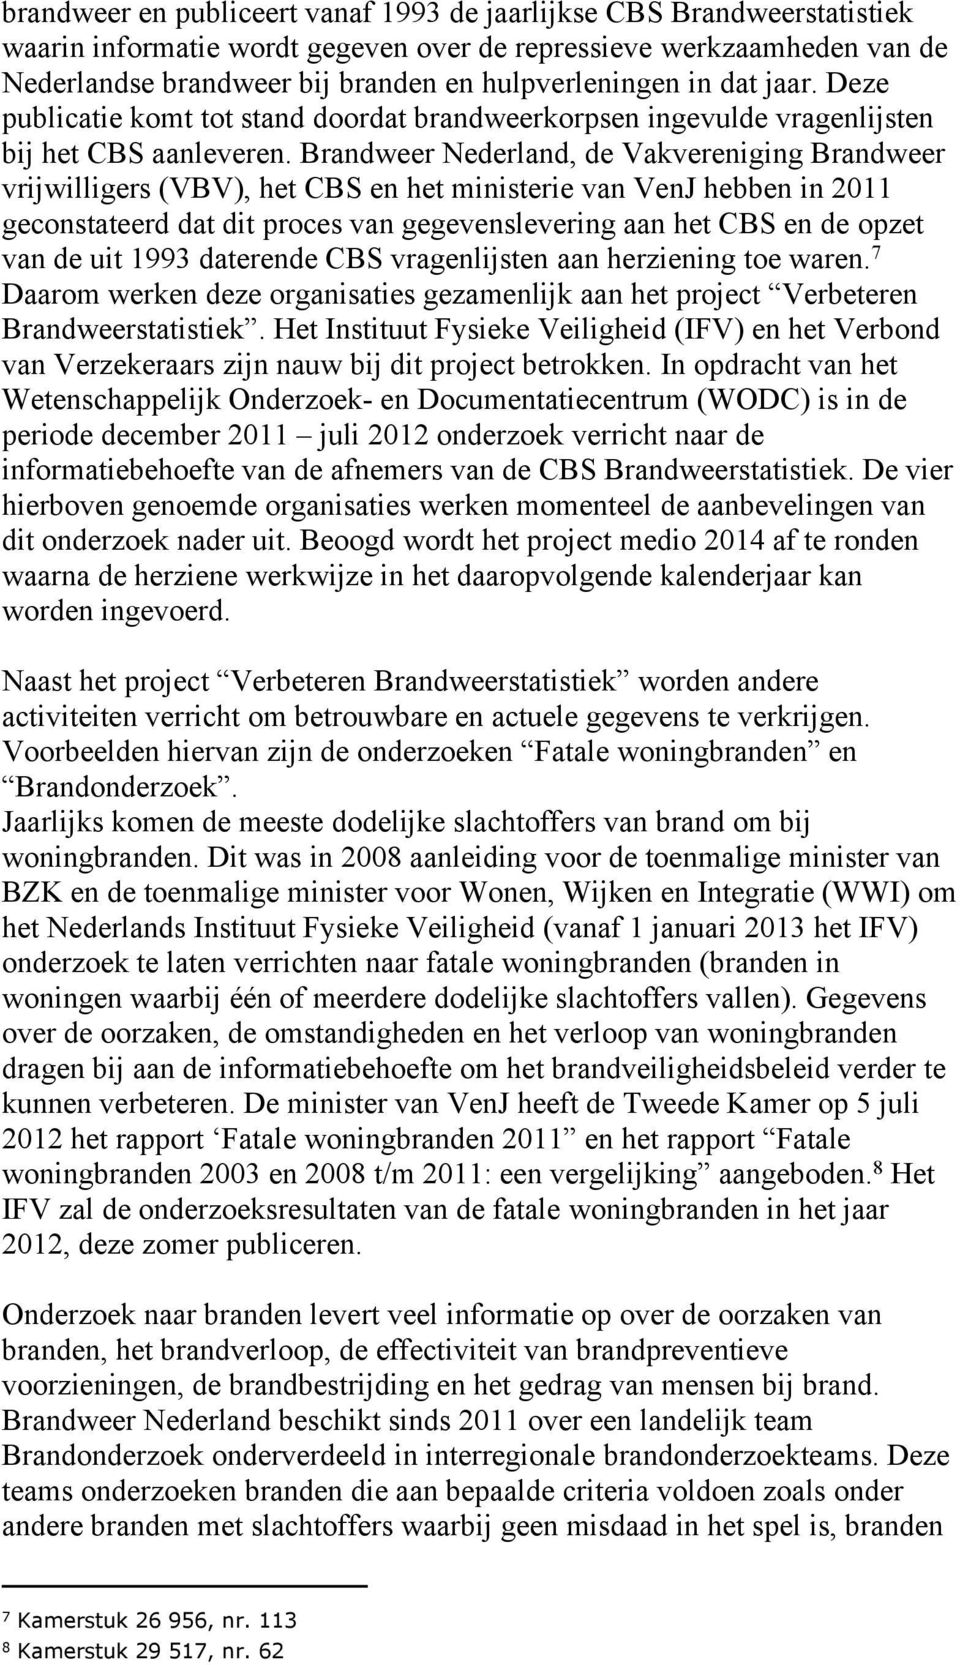 Brandweer Nederland, de Vakvereniging Brandweer vrijwilligers (VBV), het CBS en het ministerie van VenJ hebben in 2011 geconstateerd dat dit proces van gegevenslevering aan het CBS en de opzet van de